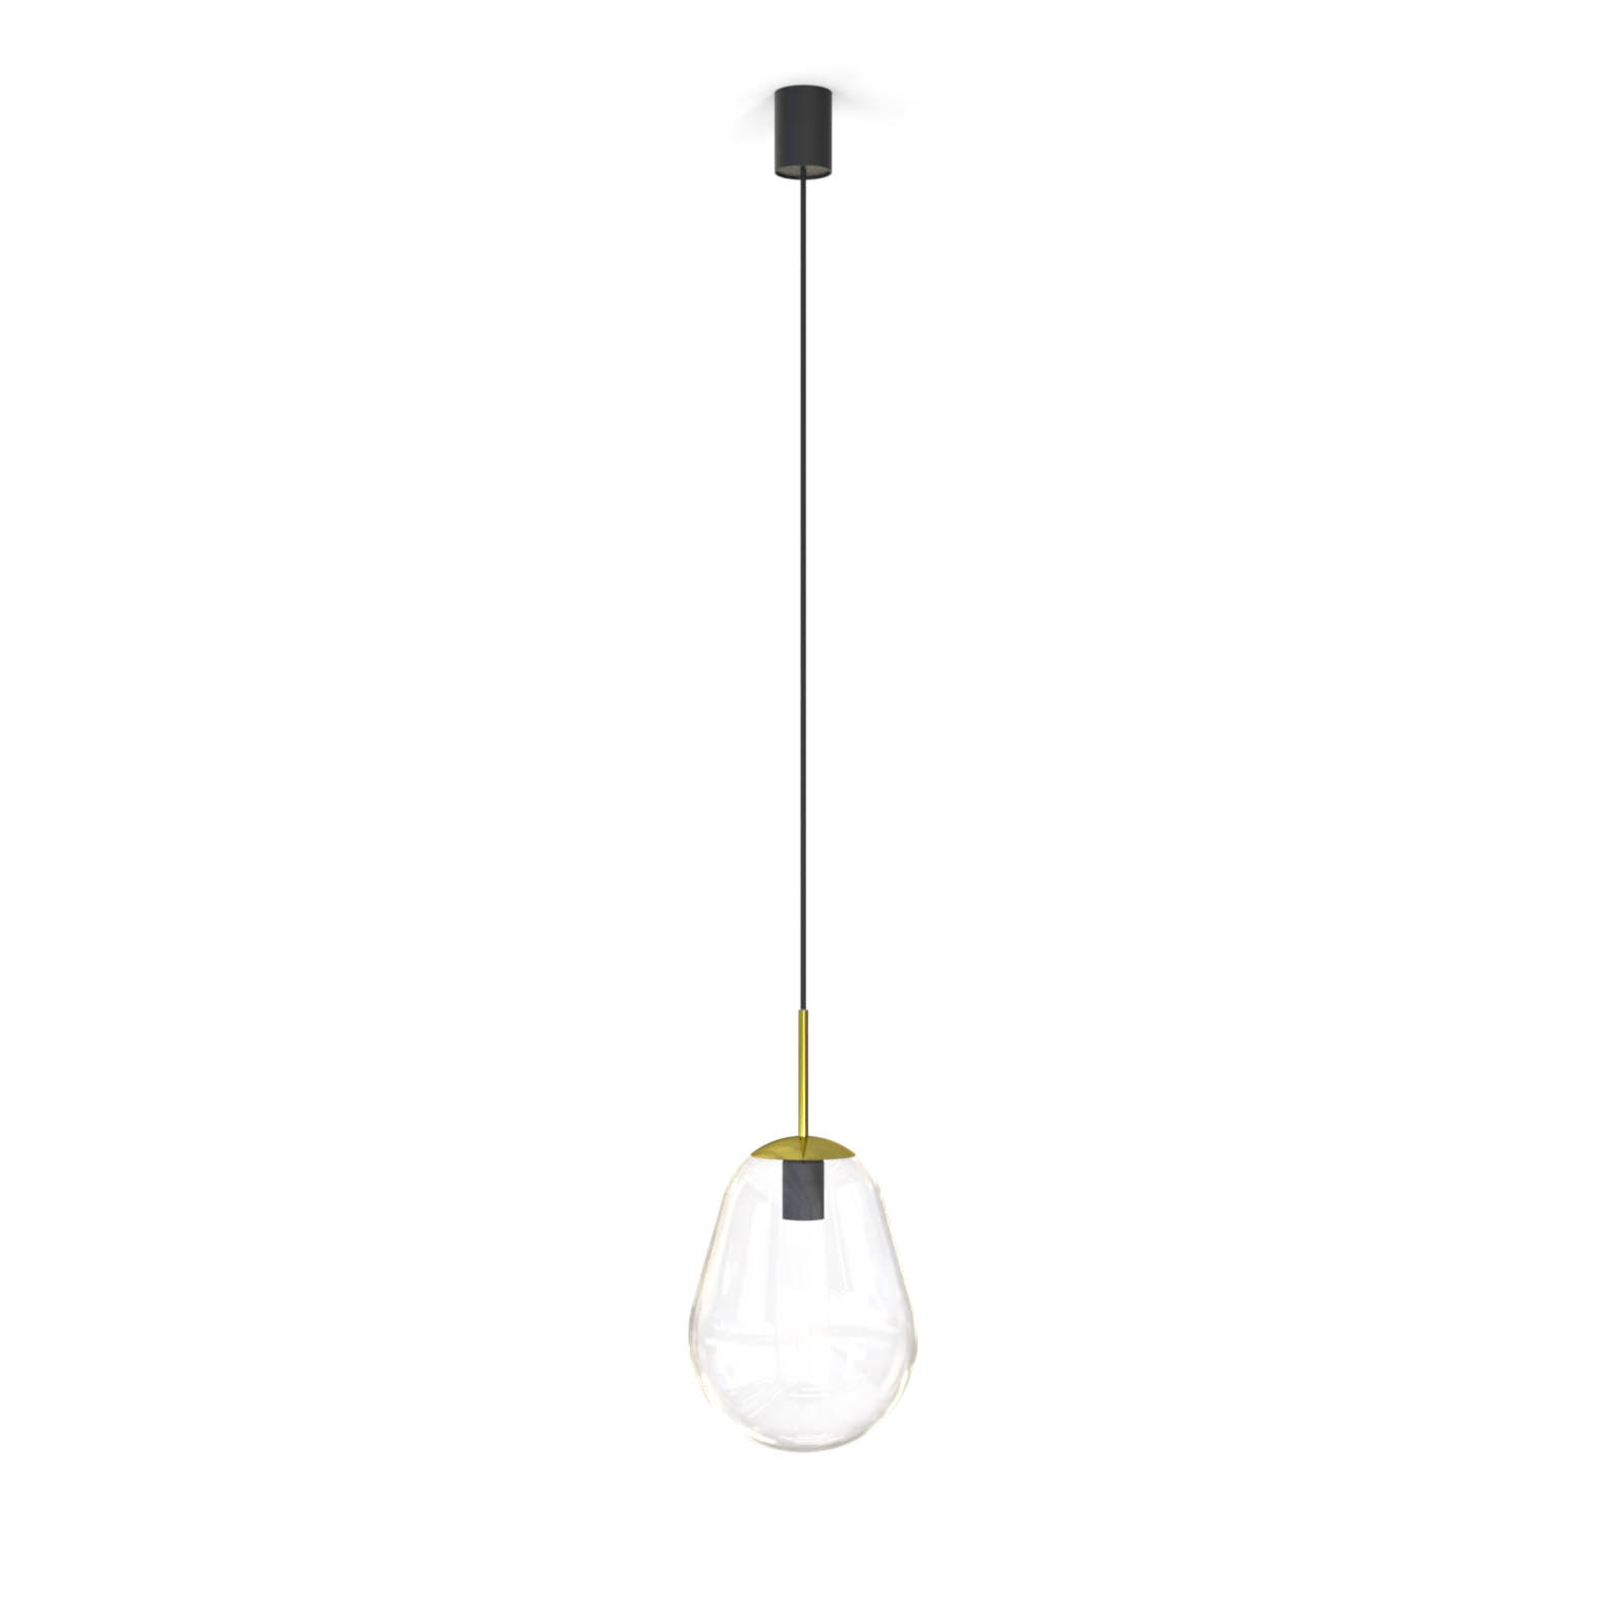 Peer hanglamp van glas, messing/helder, hoogte 30cm